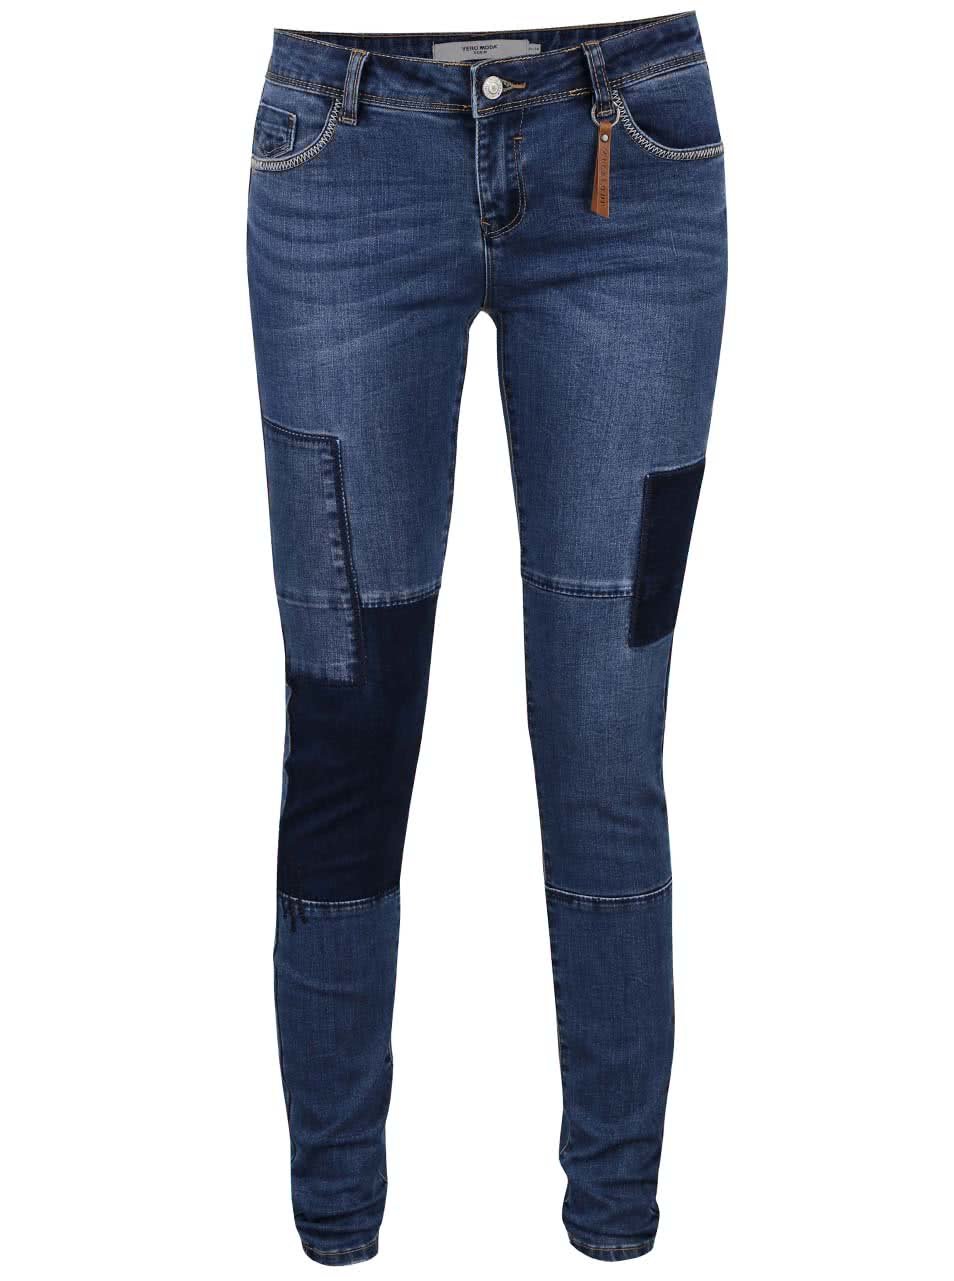 Modré džíny se záplatami Vero Moda Five